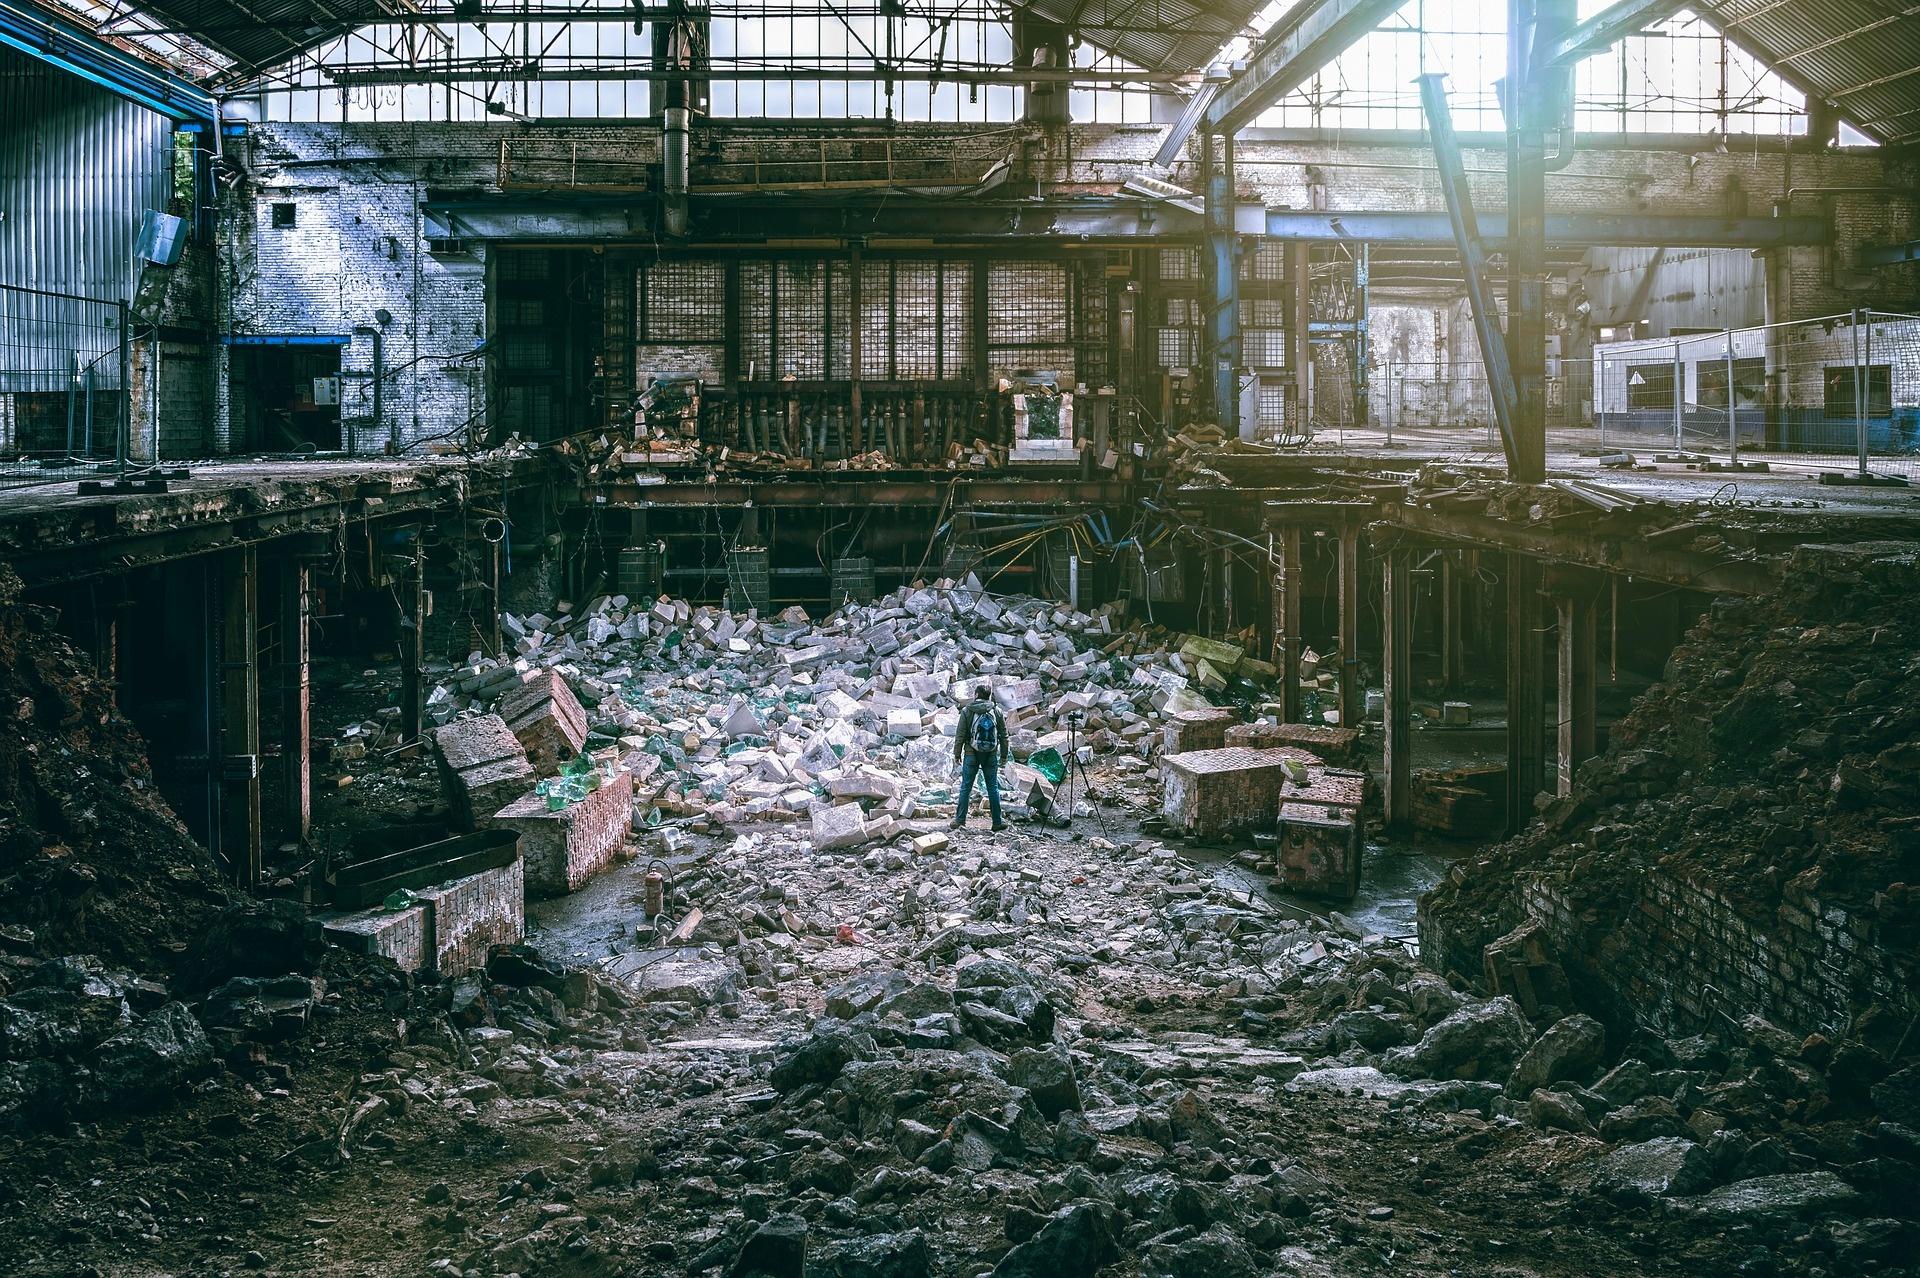 Le fasi di demolizione di un capannone industriale.